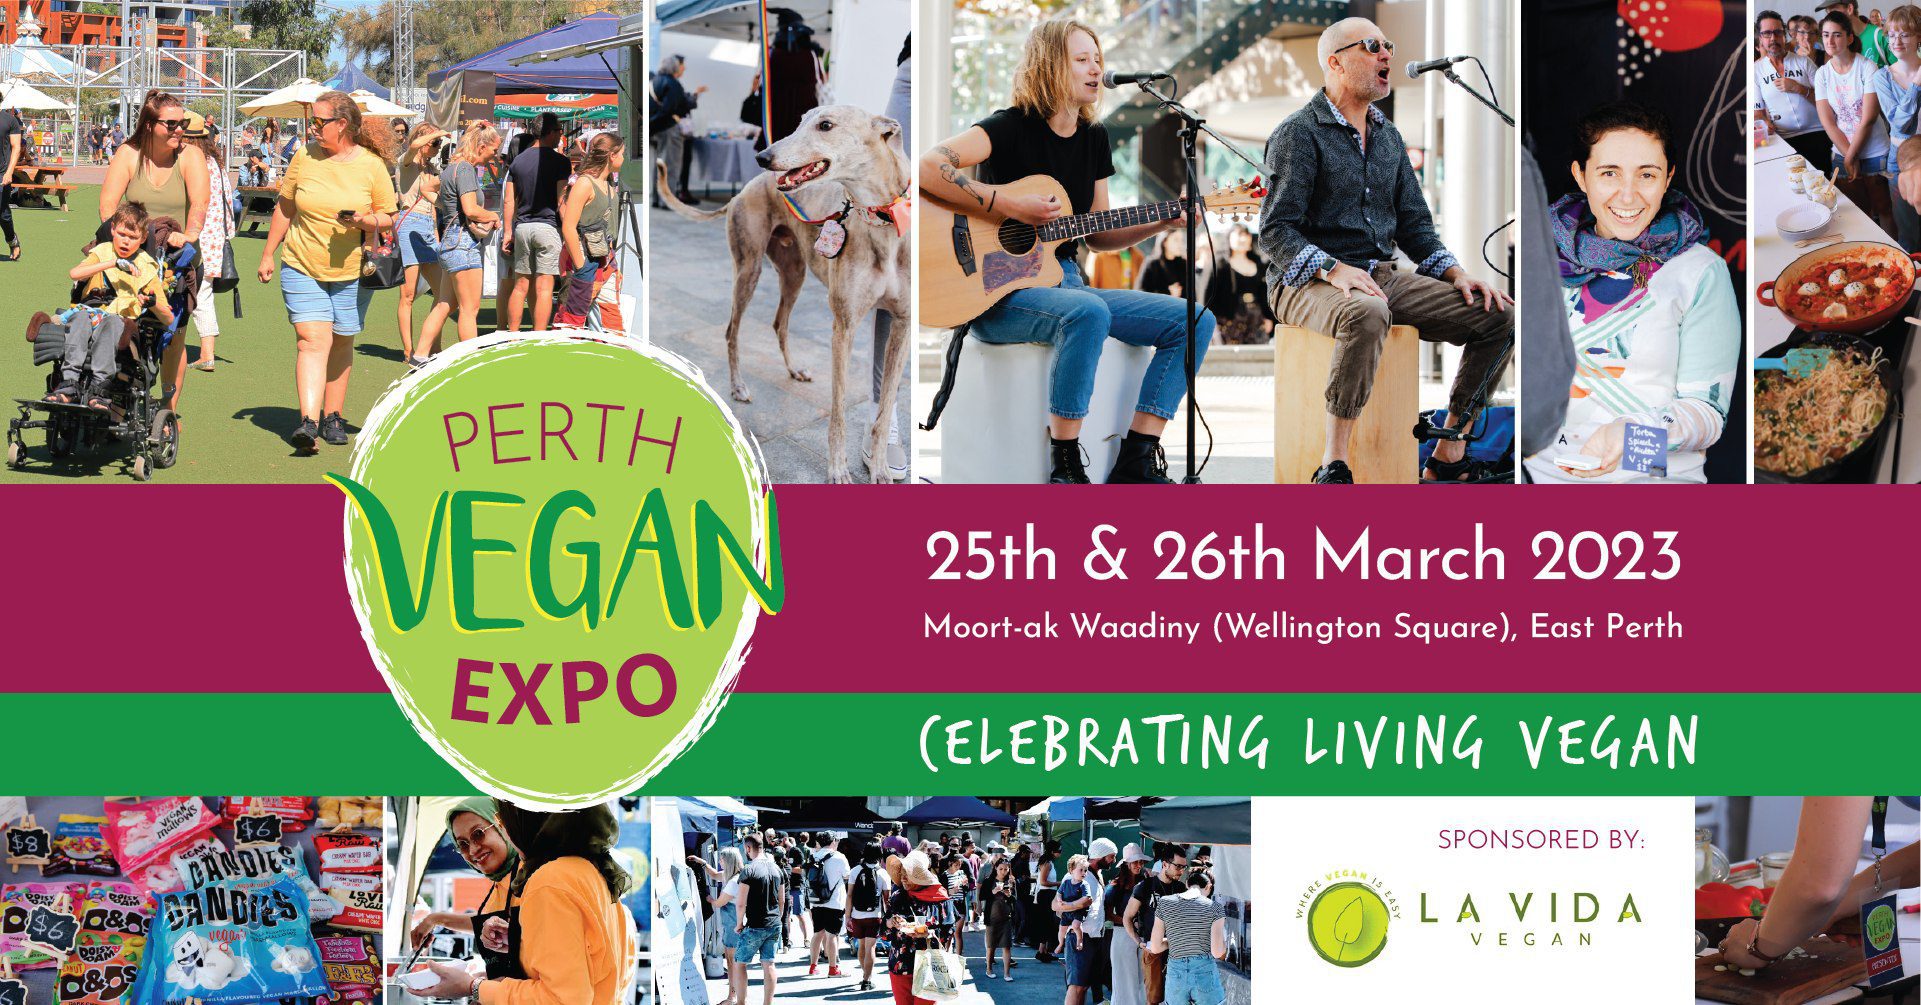 Perth Vegan Expo